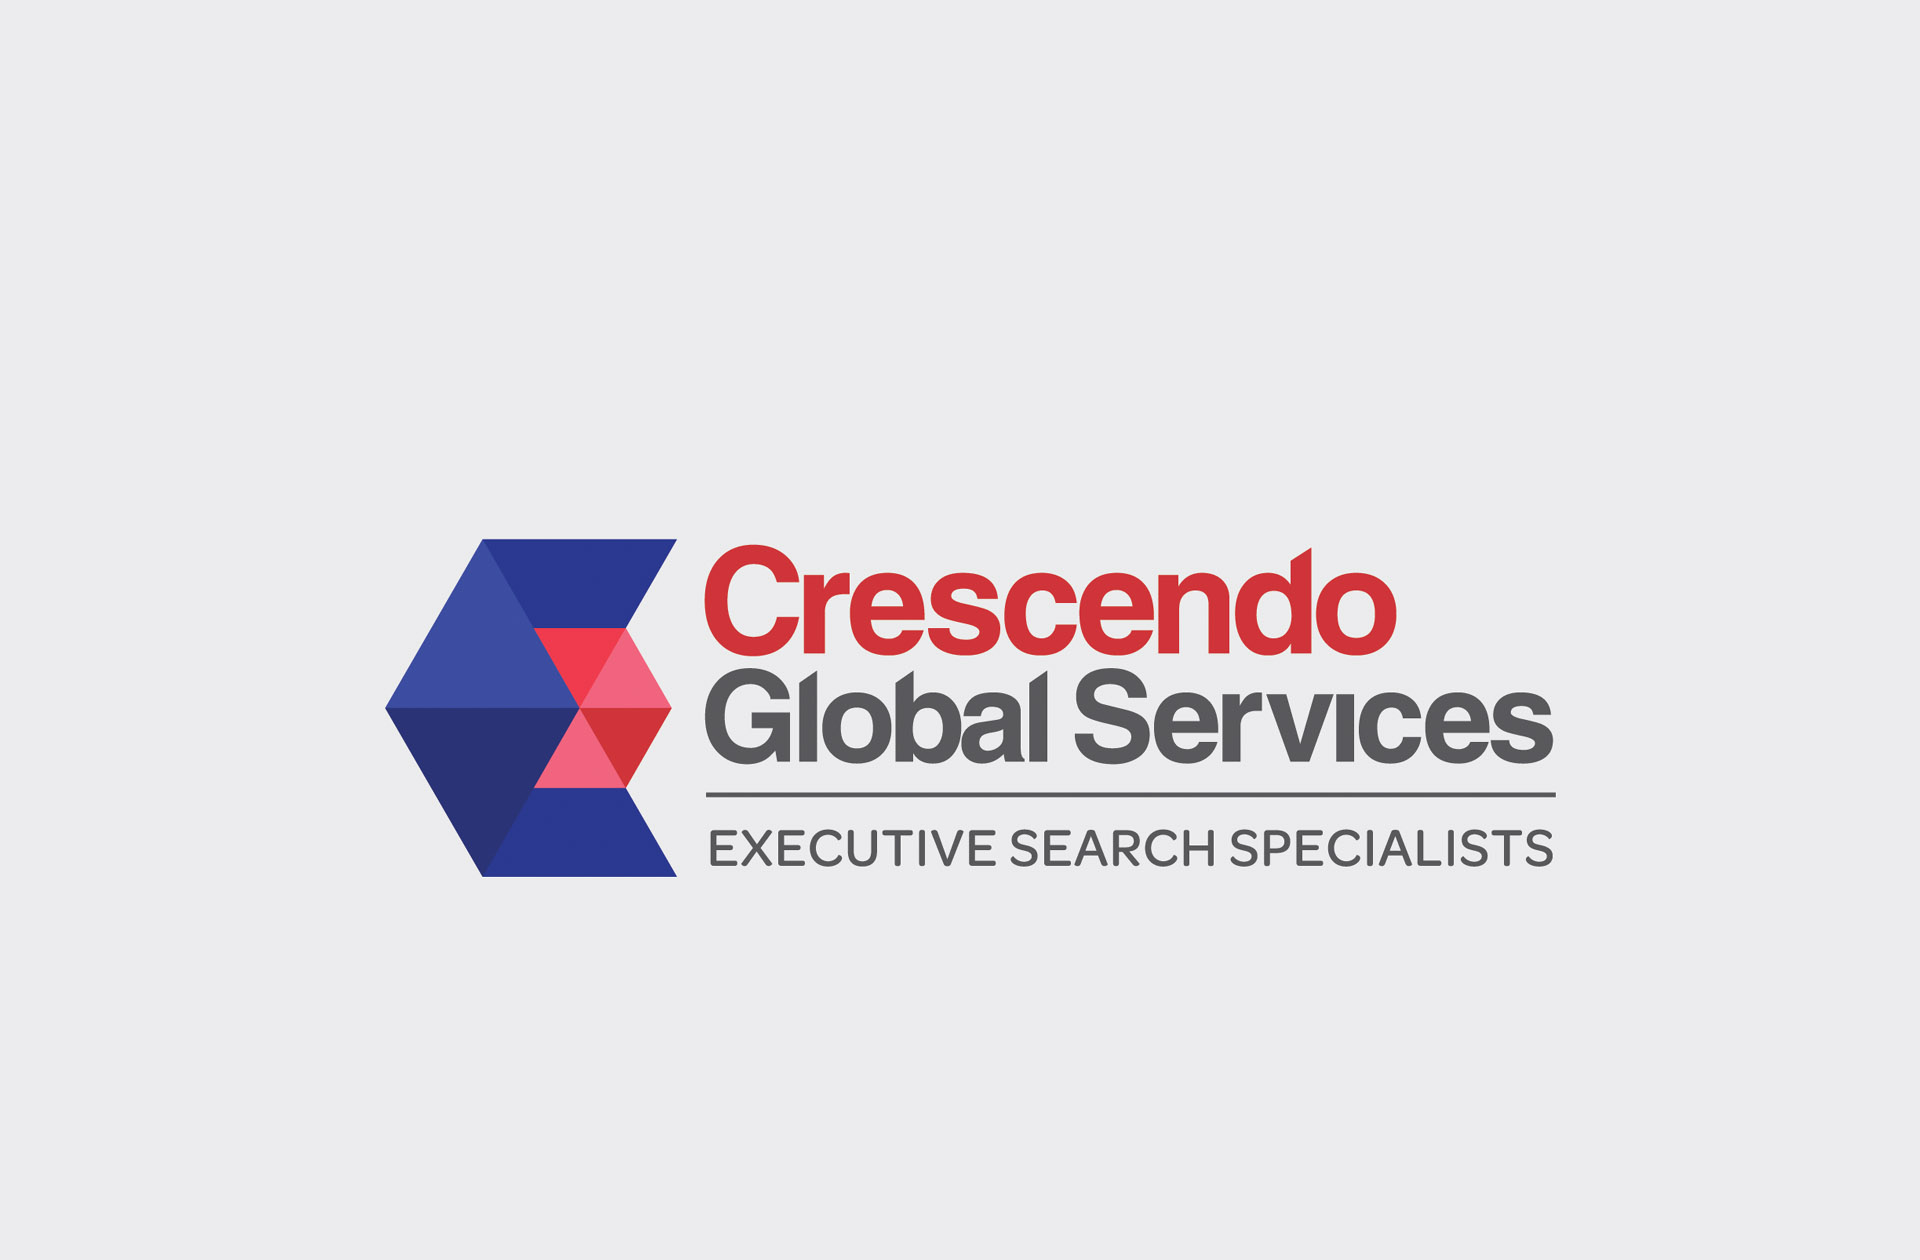 Crescendo Global Services